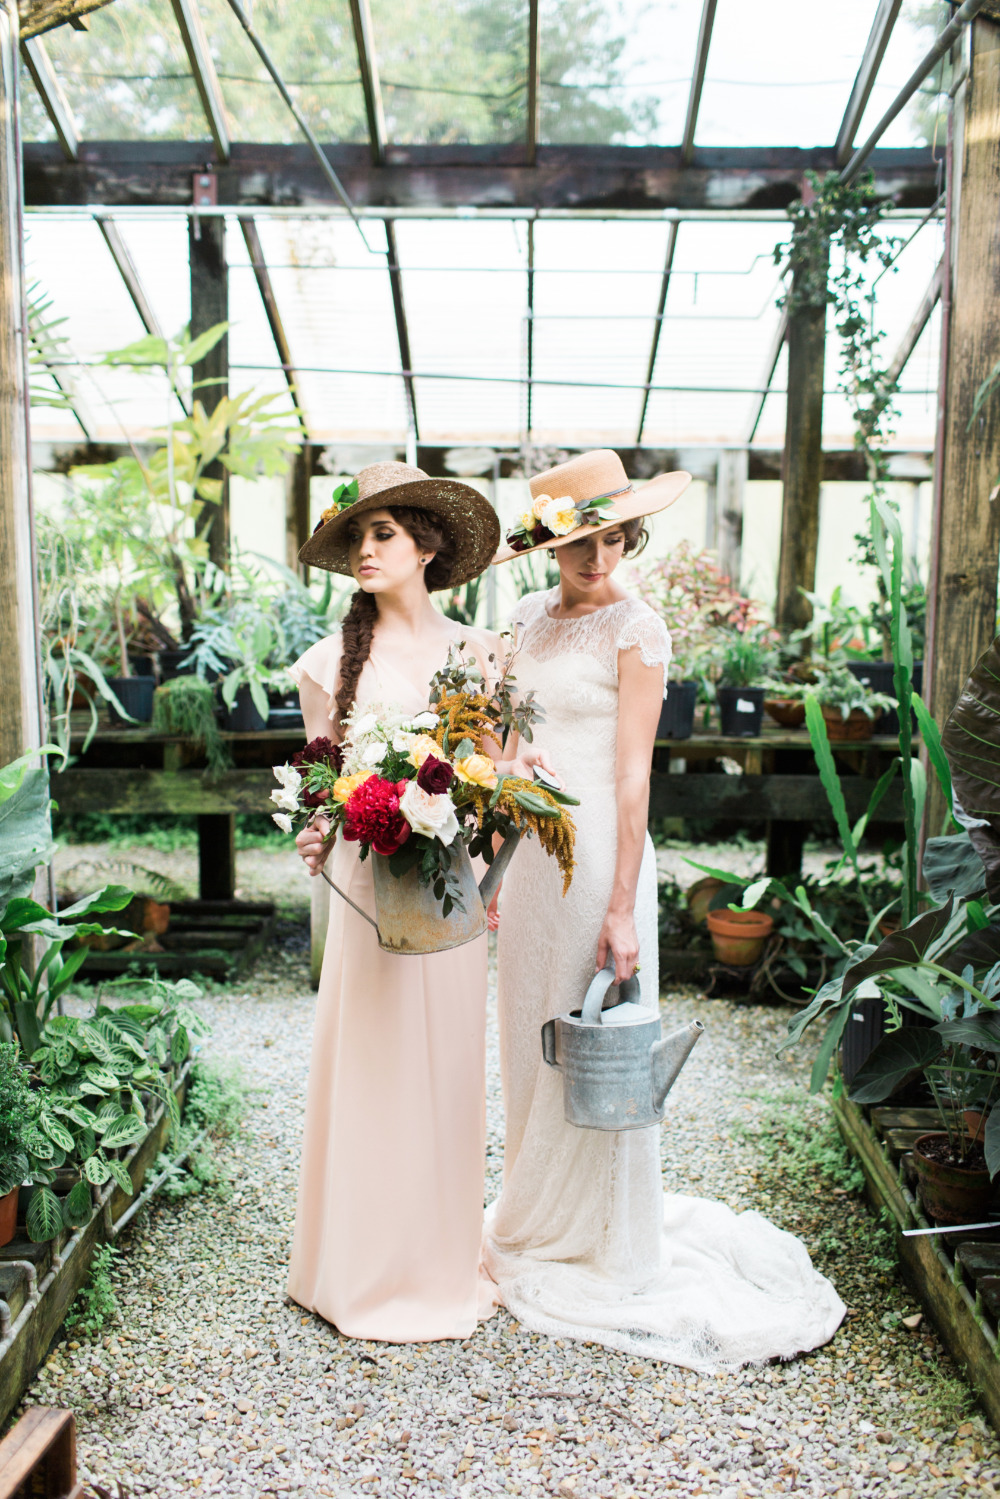 Gorgeous Greenhouse Garden Wedding Ideas